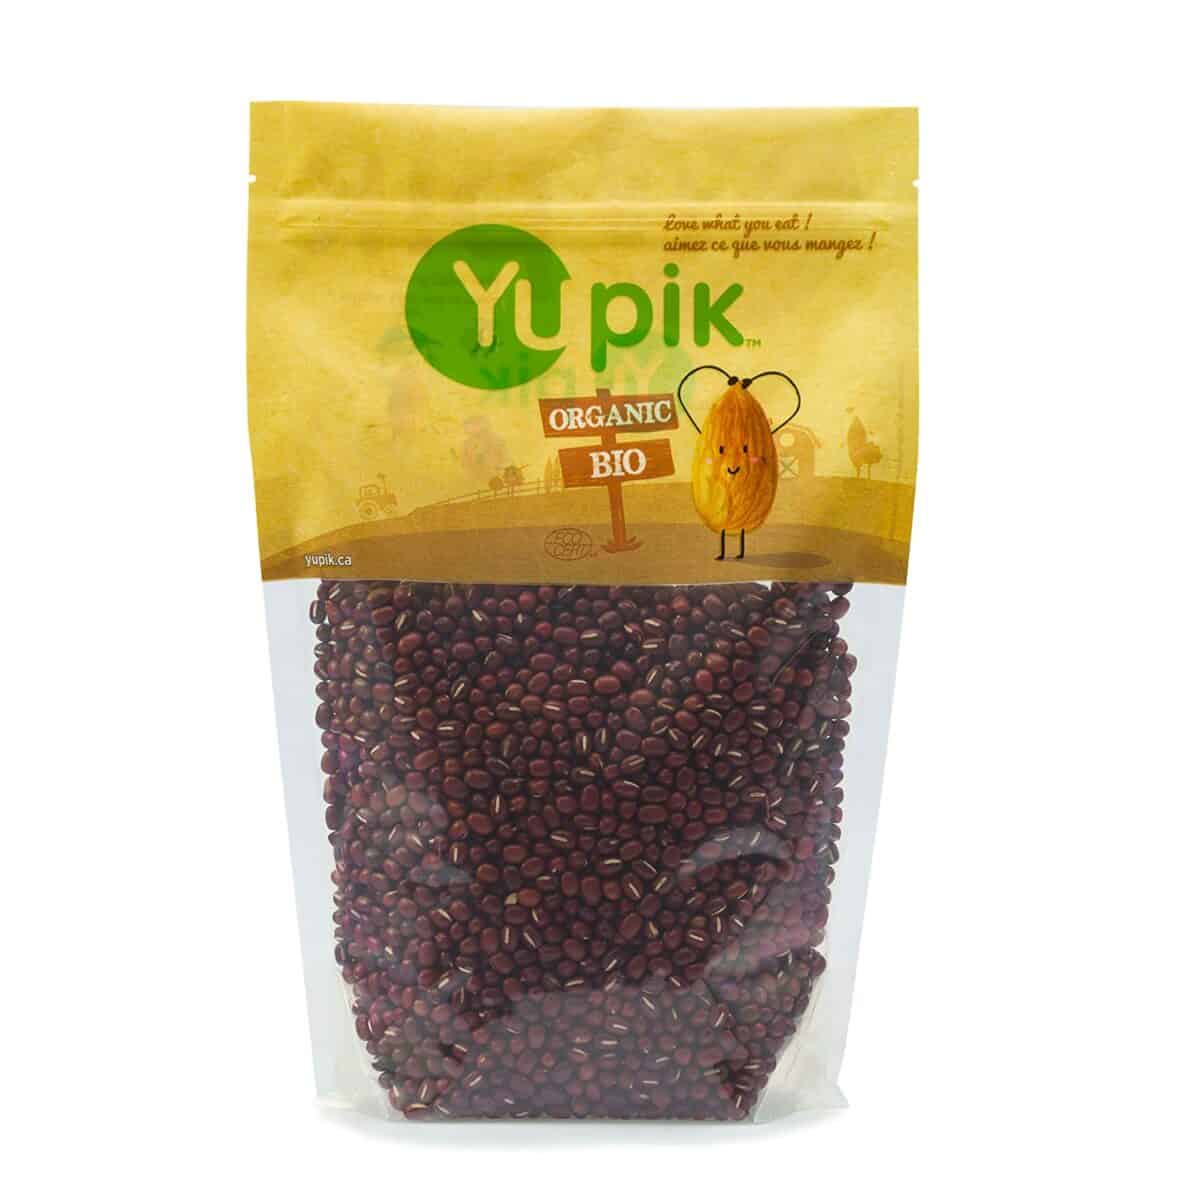 Yupik Organic Adzuki Beans as a substitute for mung beans